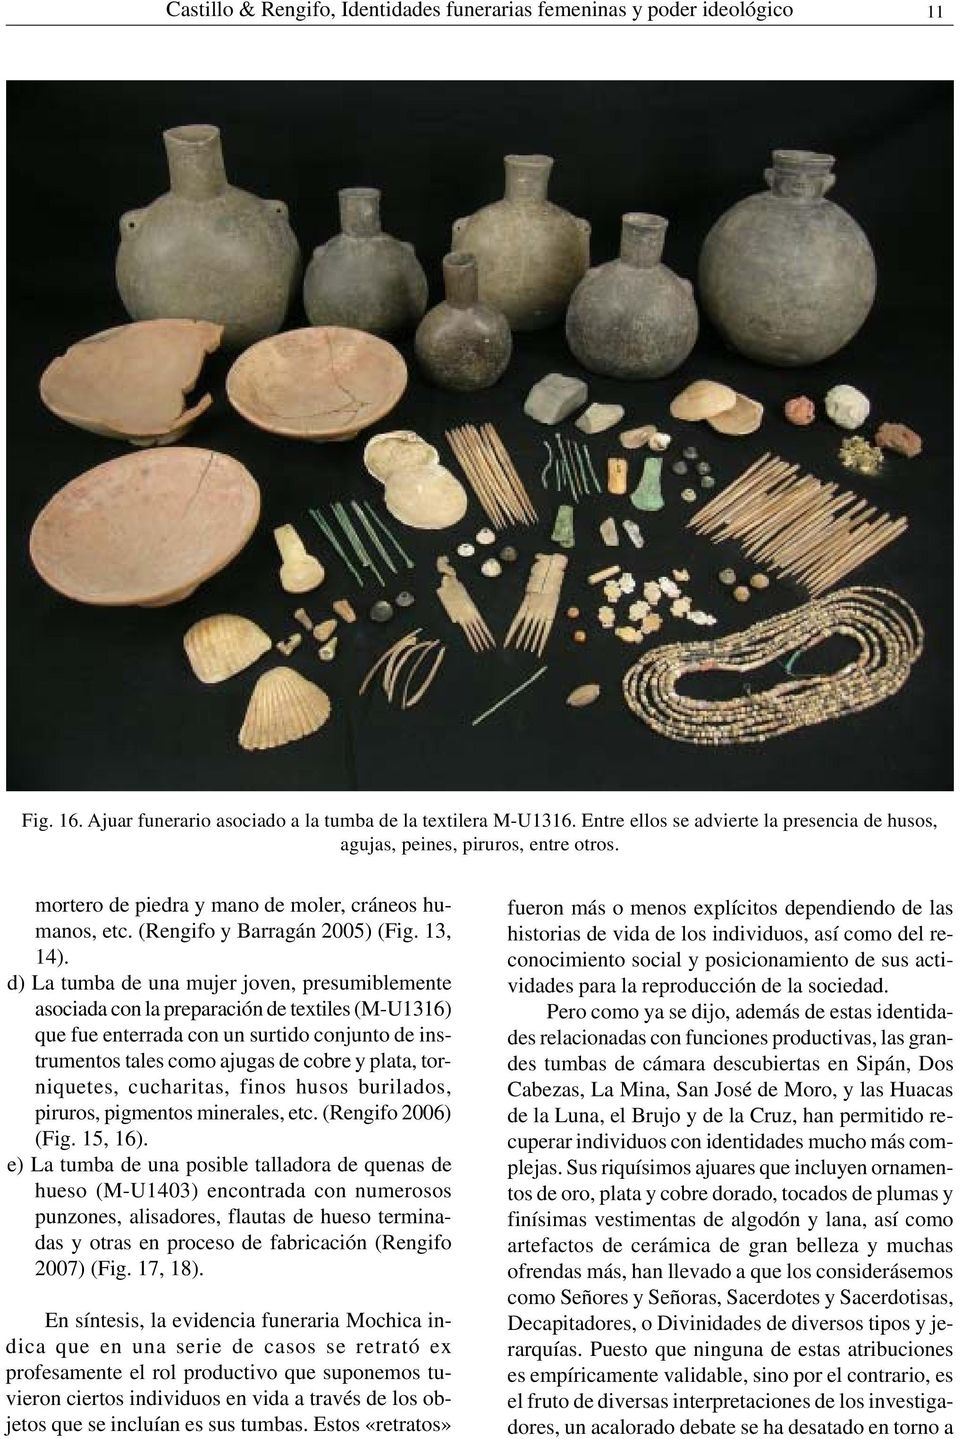 d) La tumba de una mujer joven, presumiblemente asociada con la preparación de textiles (M-U1316) que fue enterrada con un surtido conjunto de instrumentos tales como ajugas de cobre y plata,